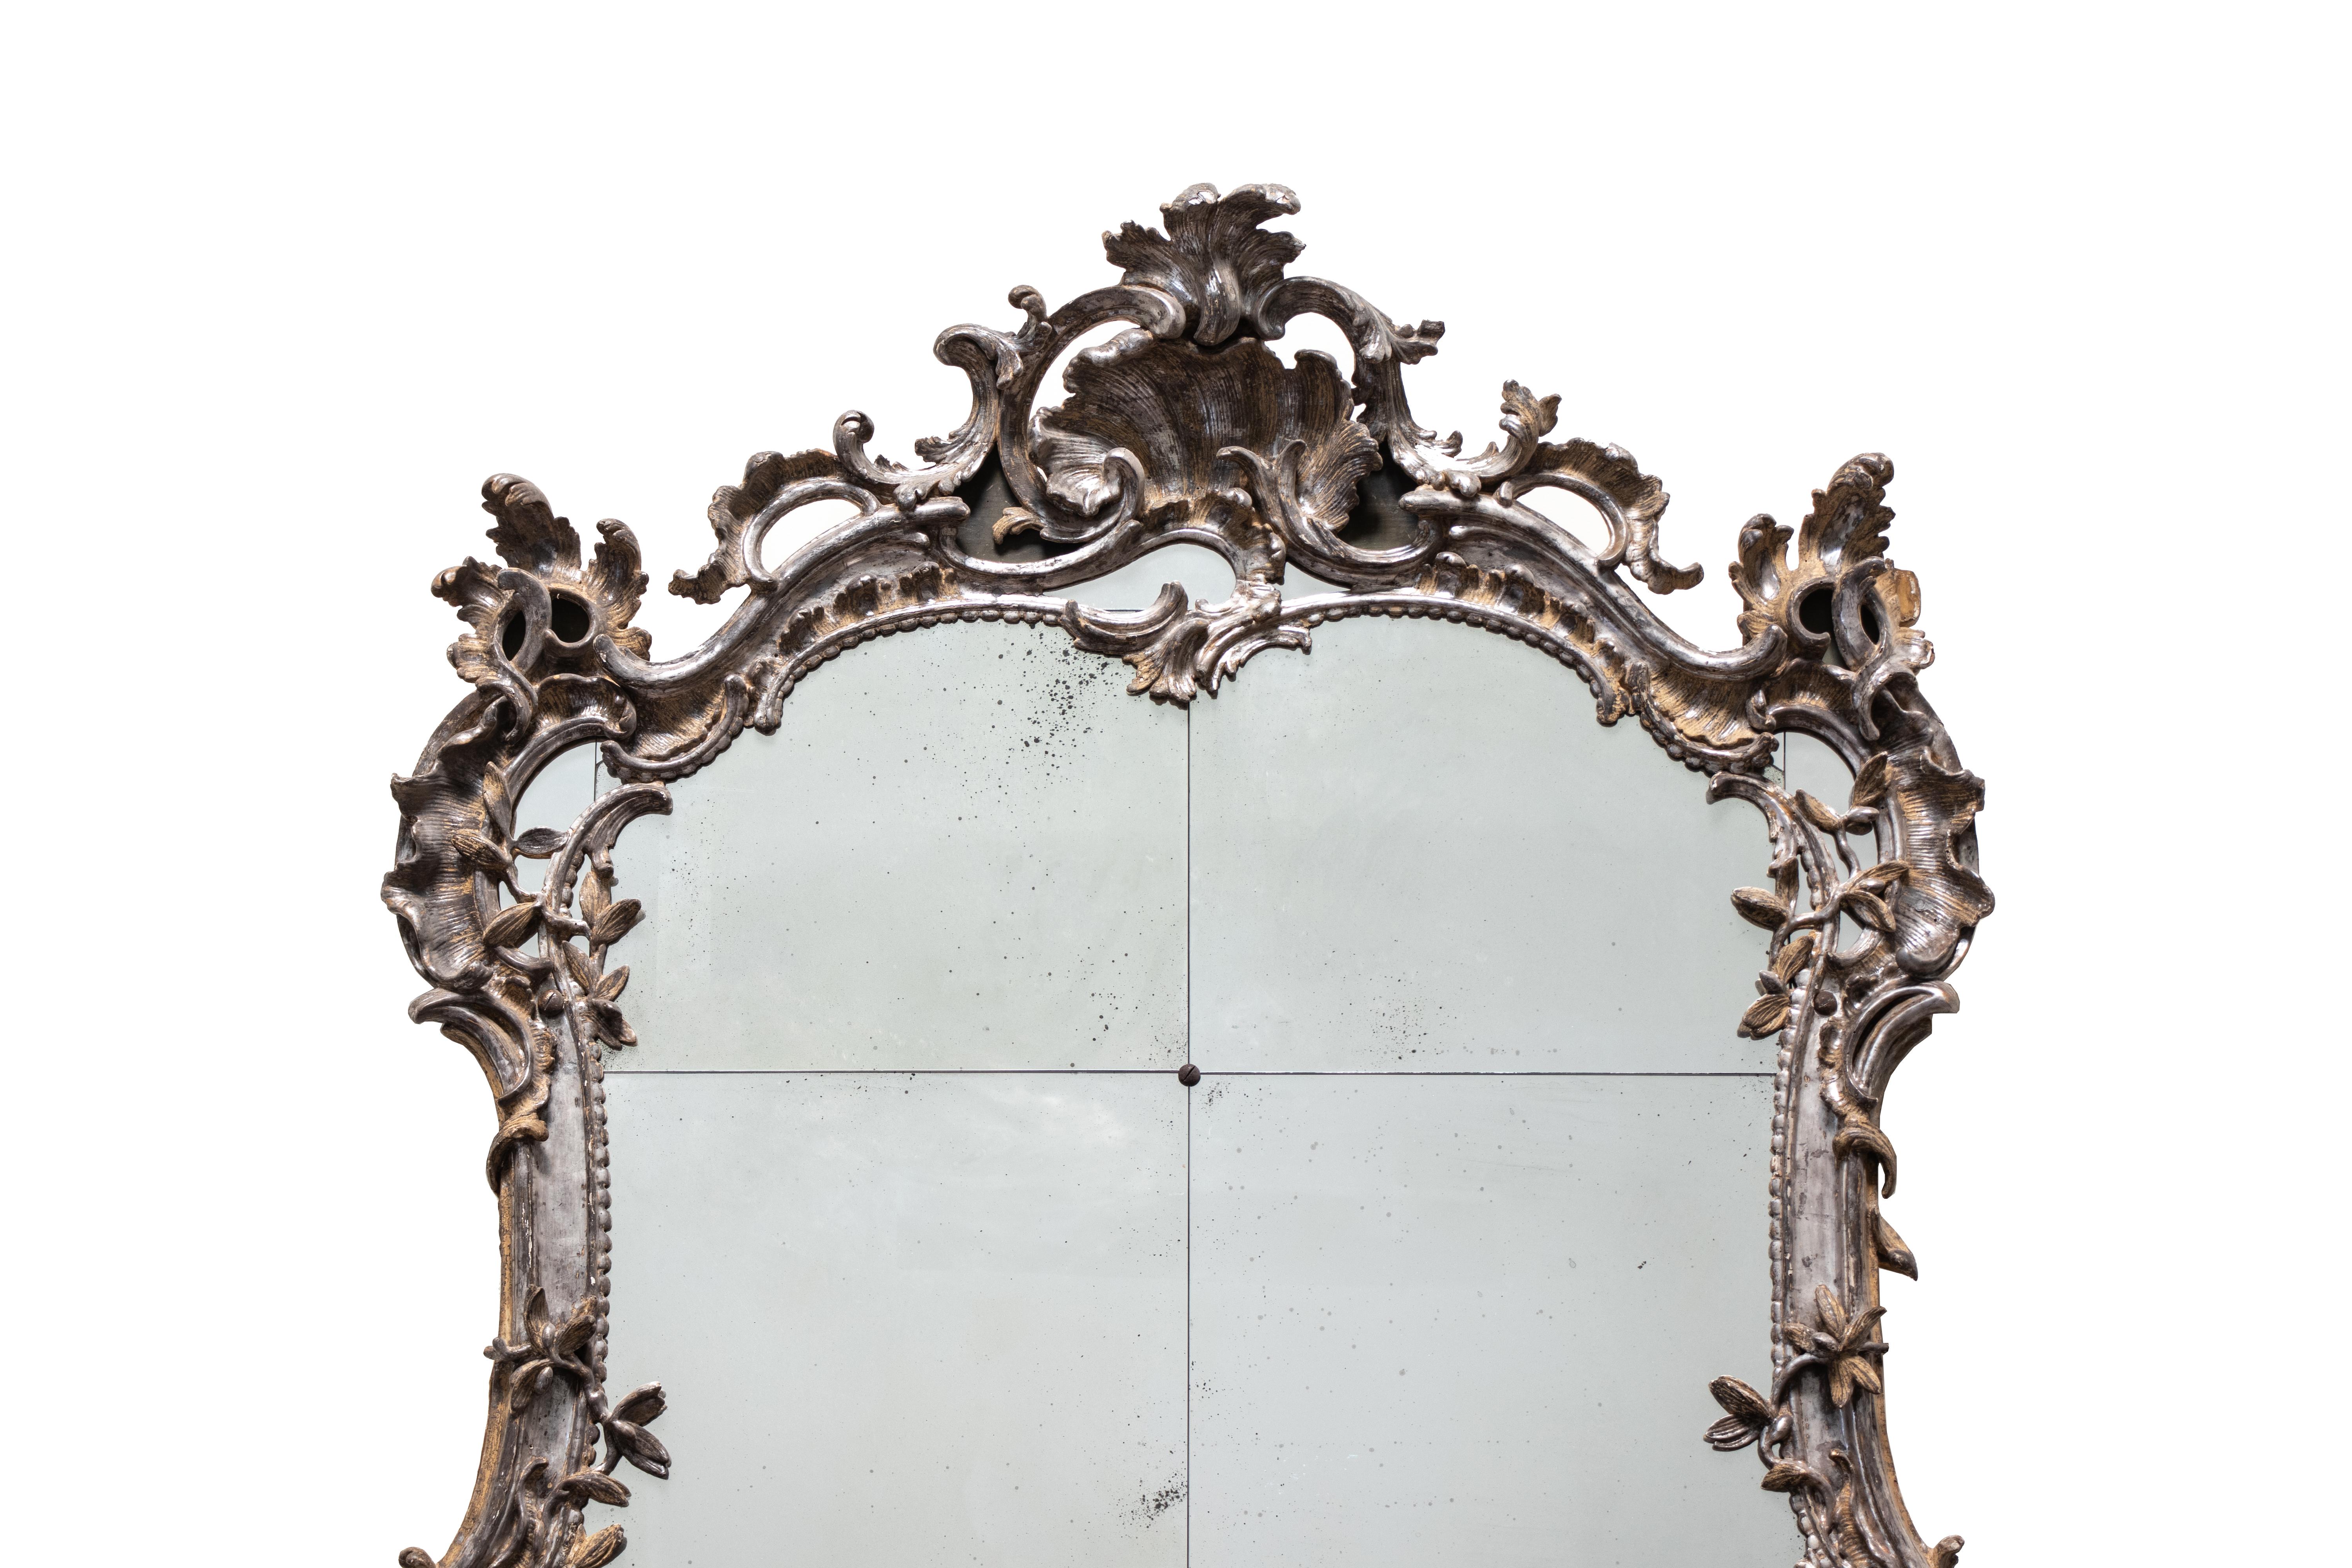 Ein großformatiger Wand- oder Konsolenspiegel im Rokokostil aus der Mitte des 18. Jahrhunderts in Süddeutschland. Es besteht aus sechs Spiegelfeldern, die von reich verziertem, versilbertem Holz umrahmt sind, das in Form von Rocaille-Rollen und